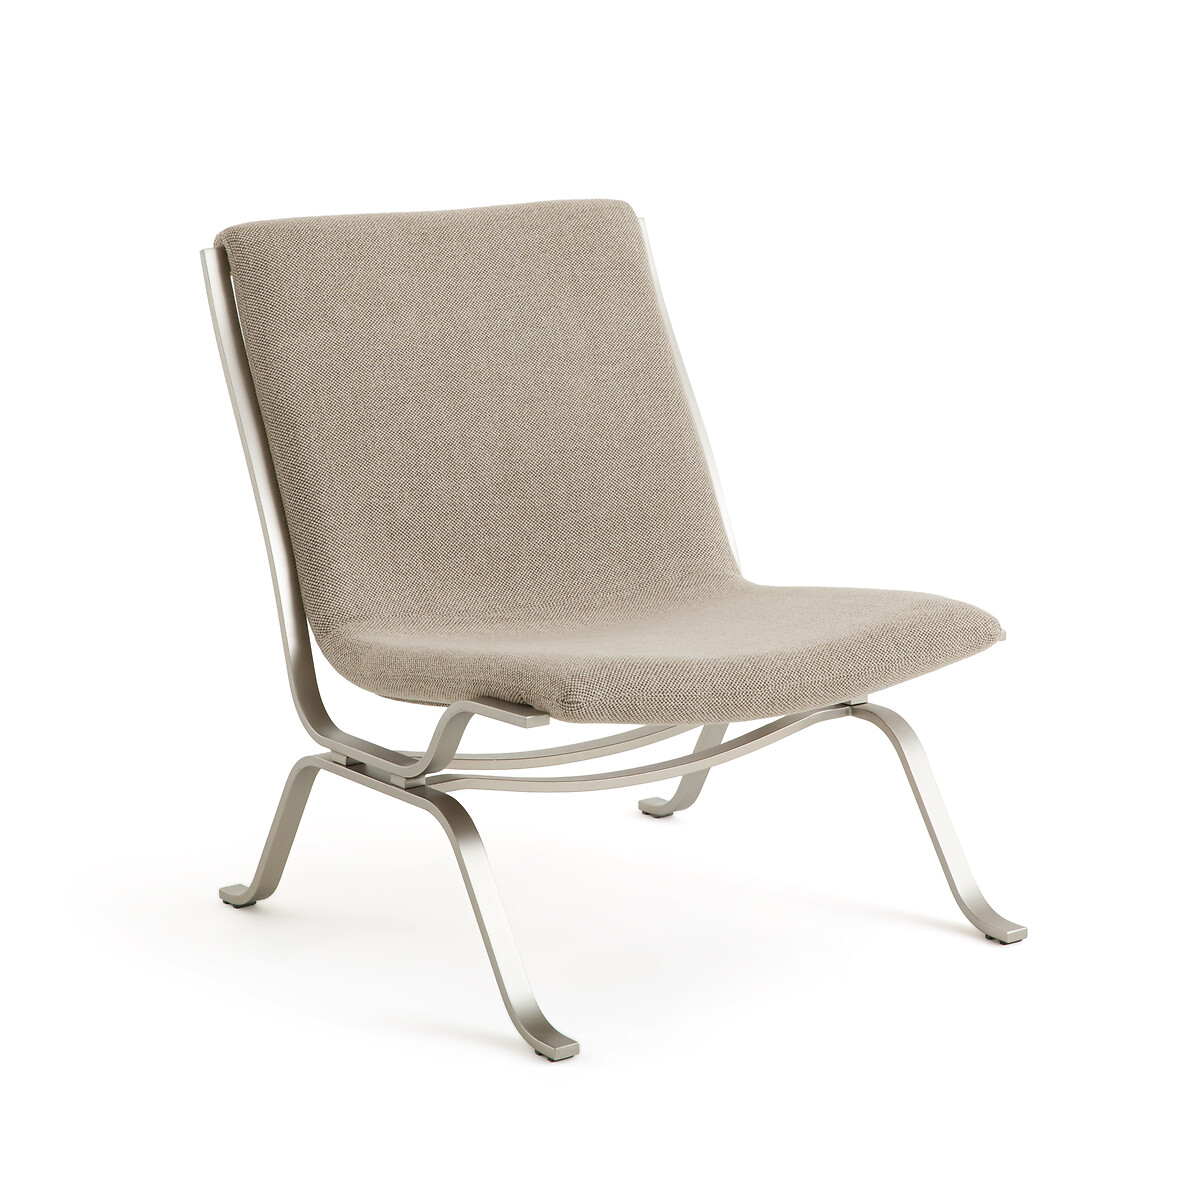 Кресло плетеное из ткани меланж и металла Pawel единый размер бежевый кресло столовое из водяного гиацинта плетеное galbo единый размер бежевый